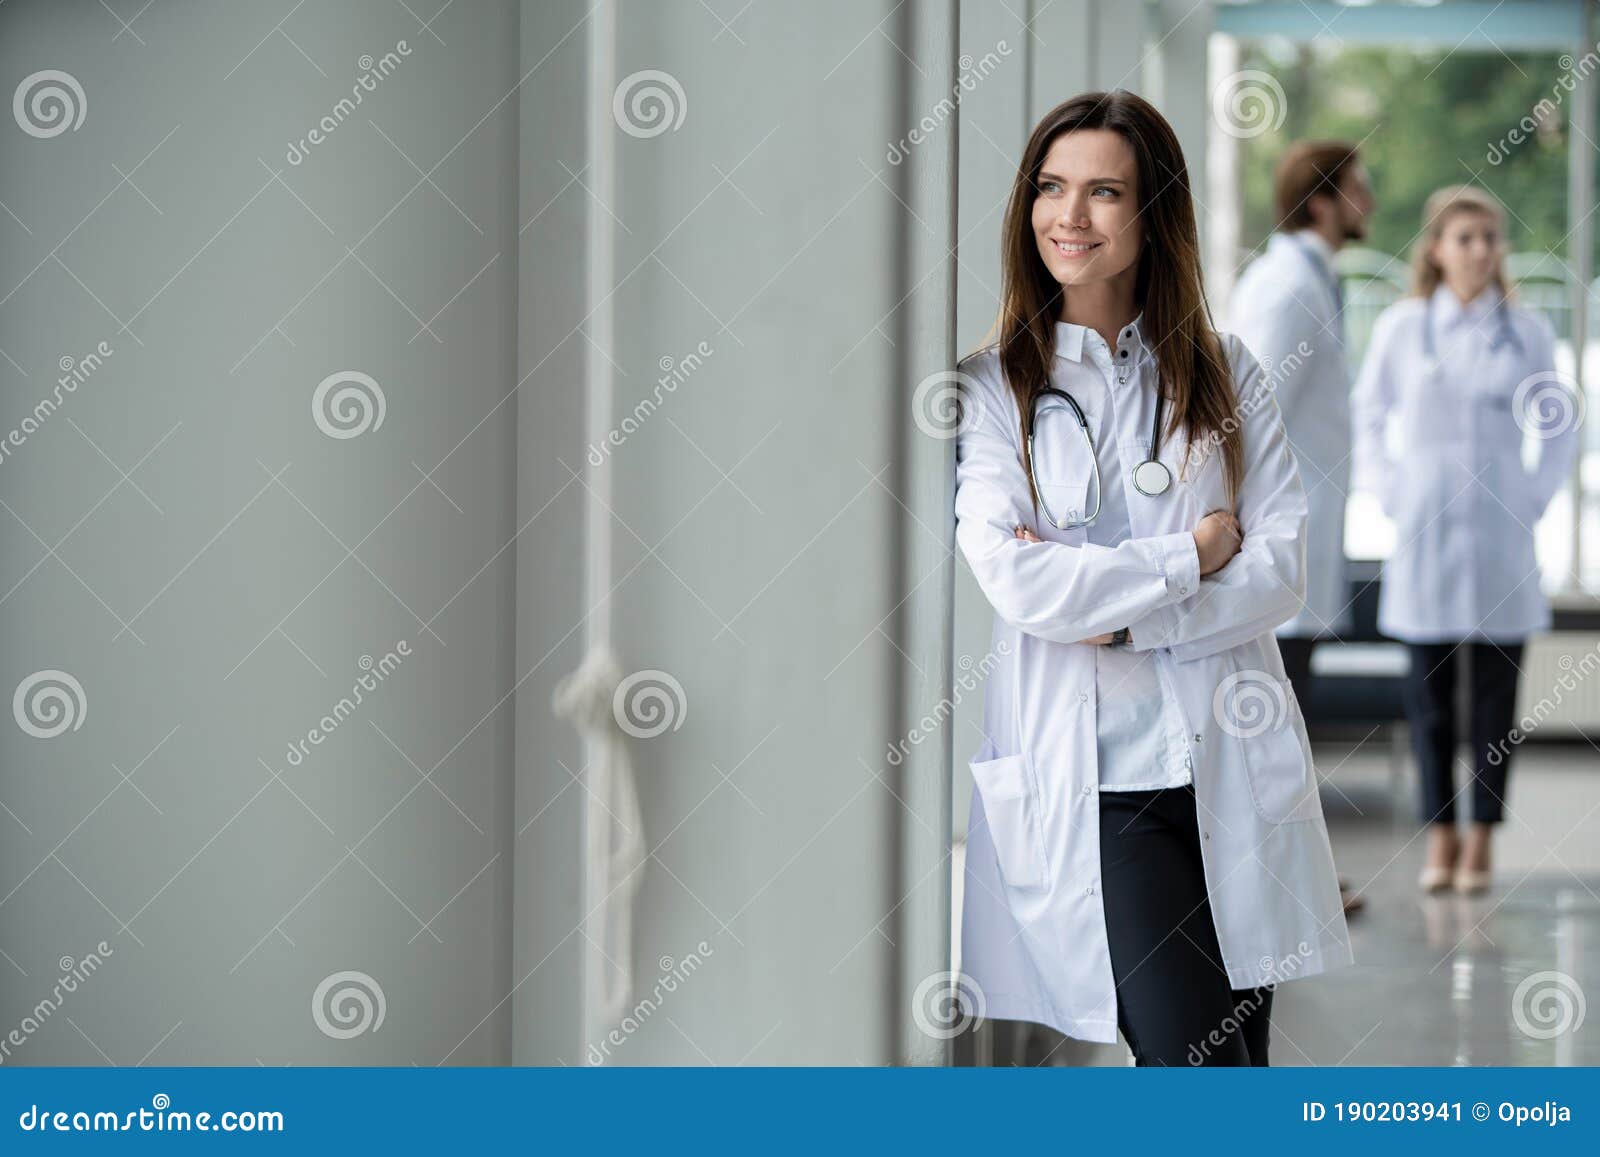 医疗小组里的女医生图片下载 - 觅知网